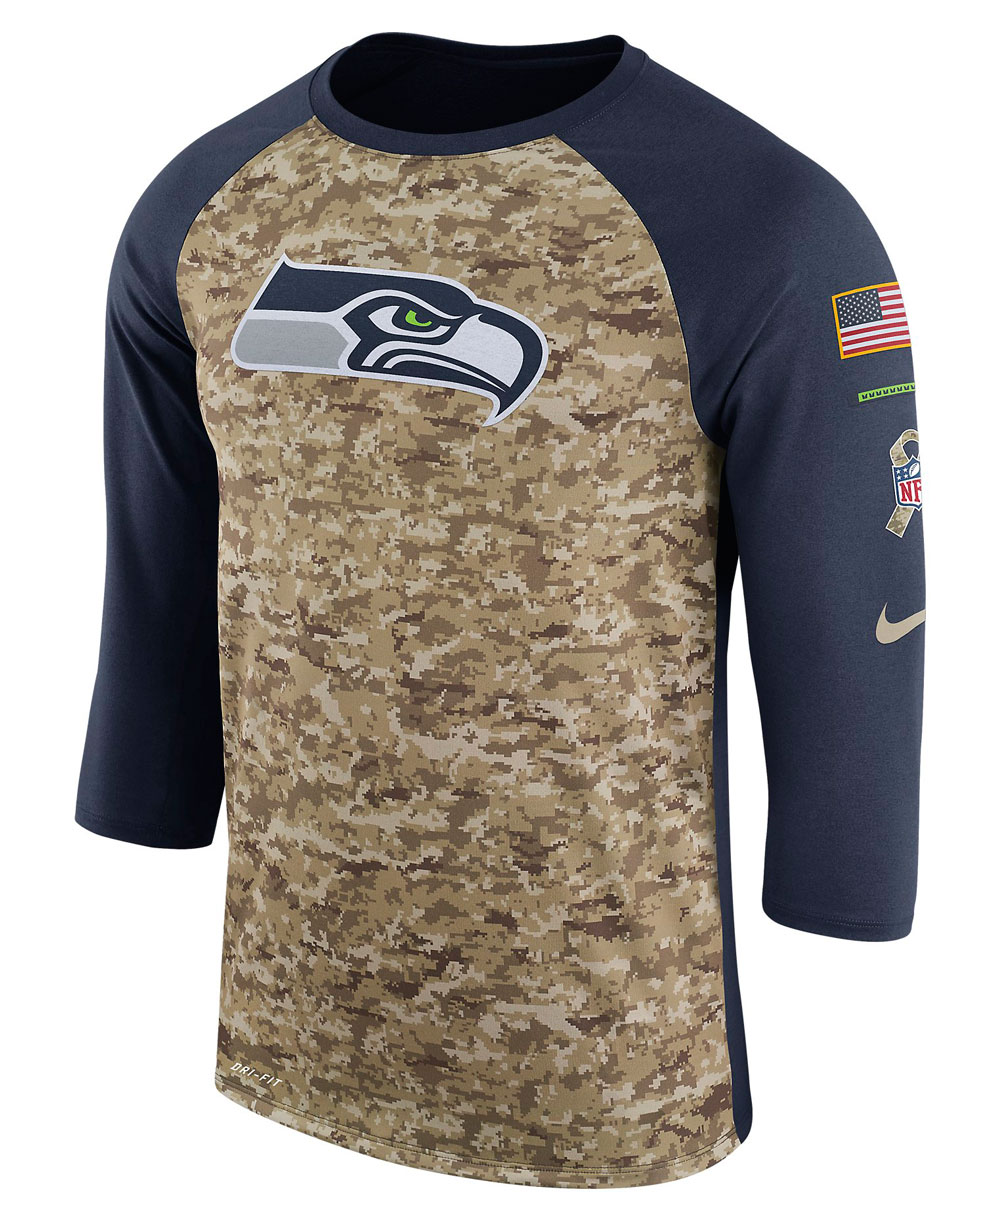 seahawks dri fit shirt